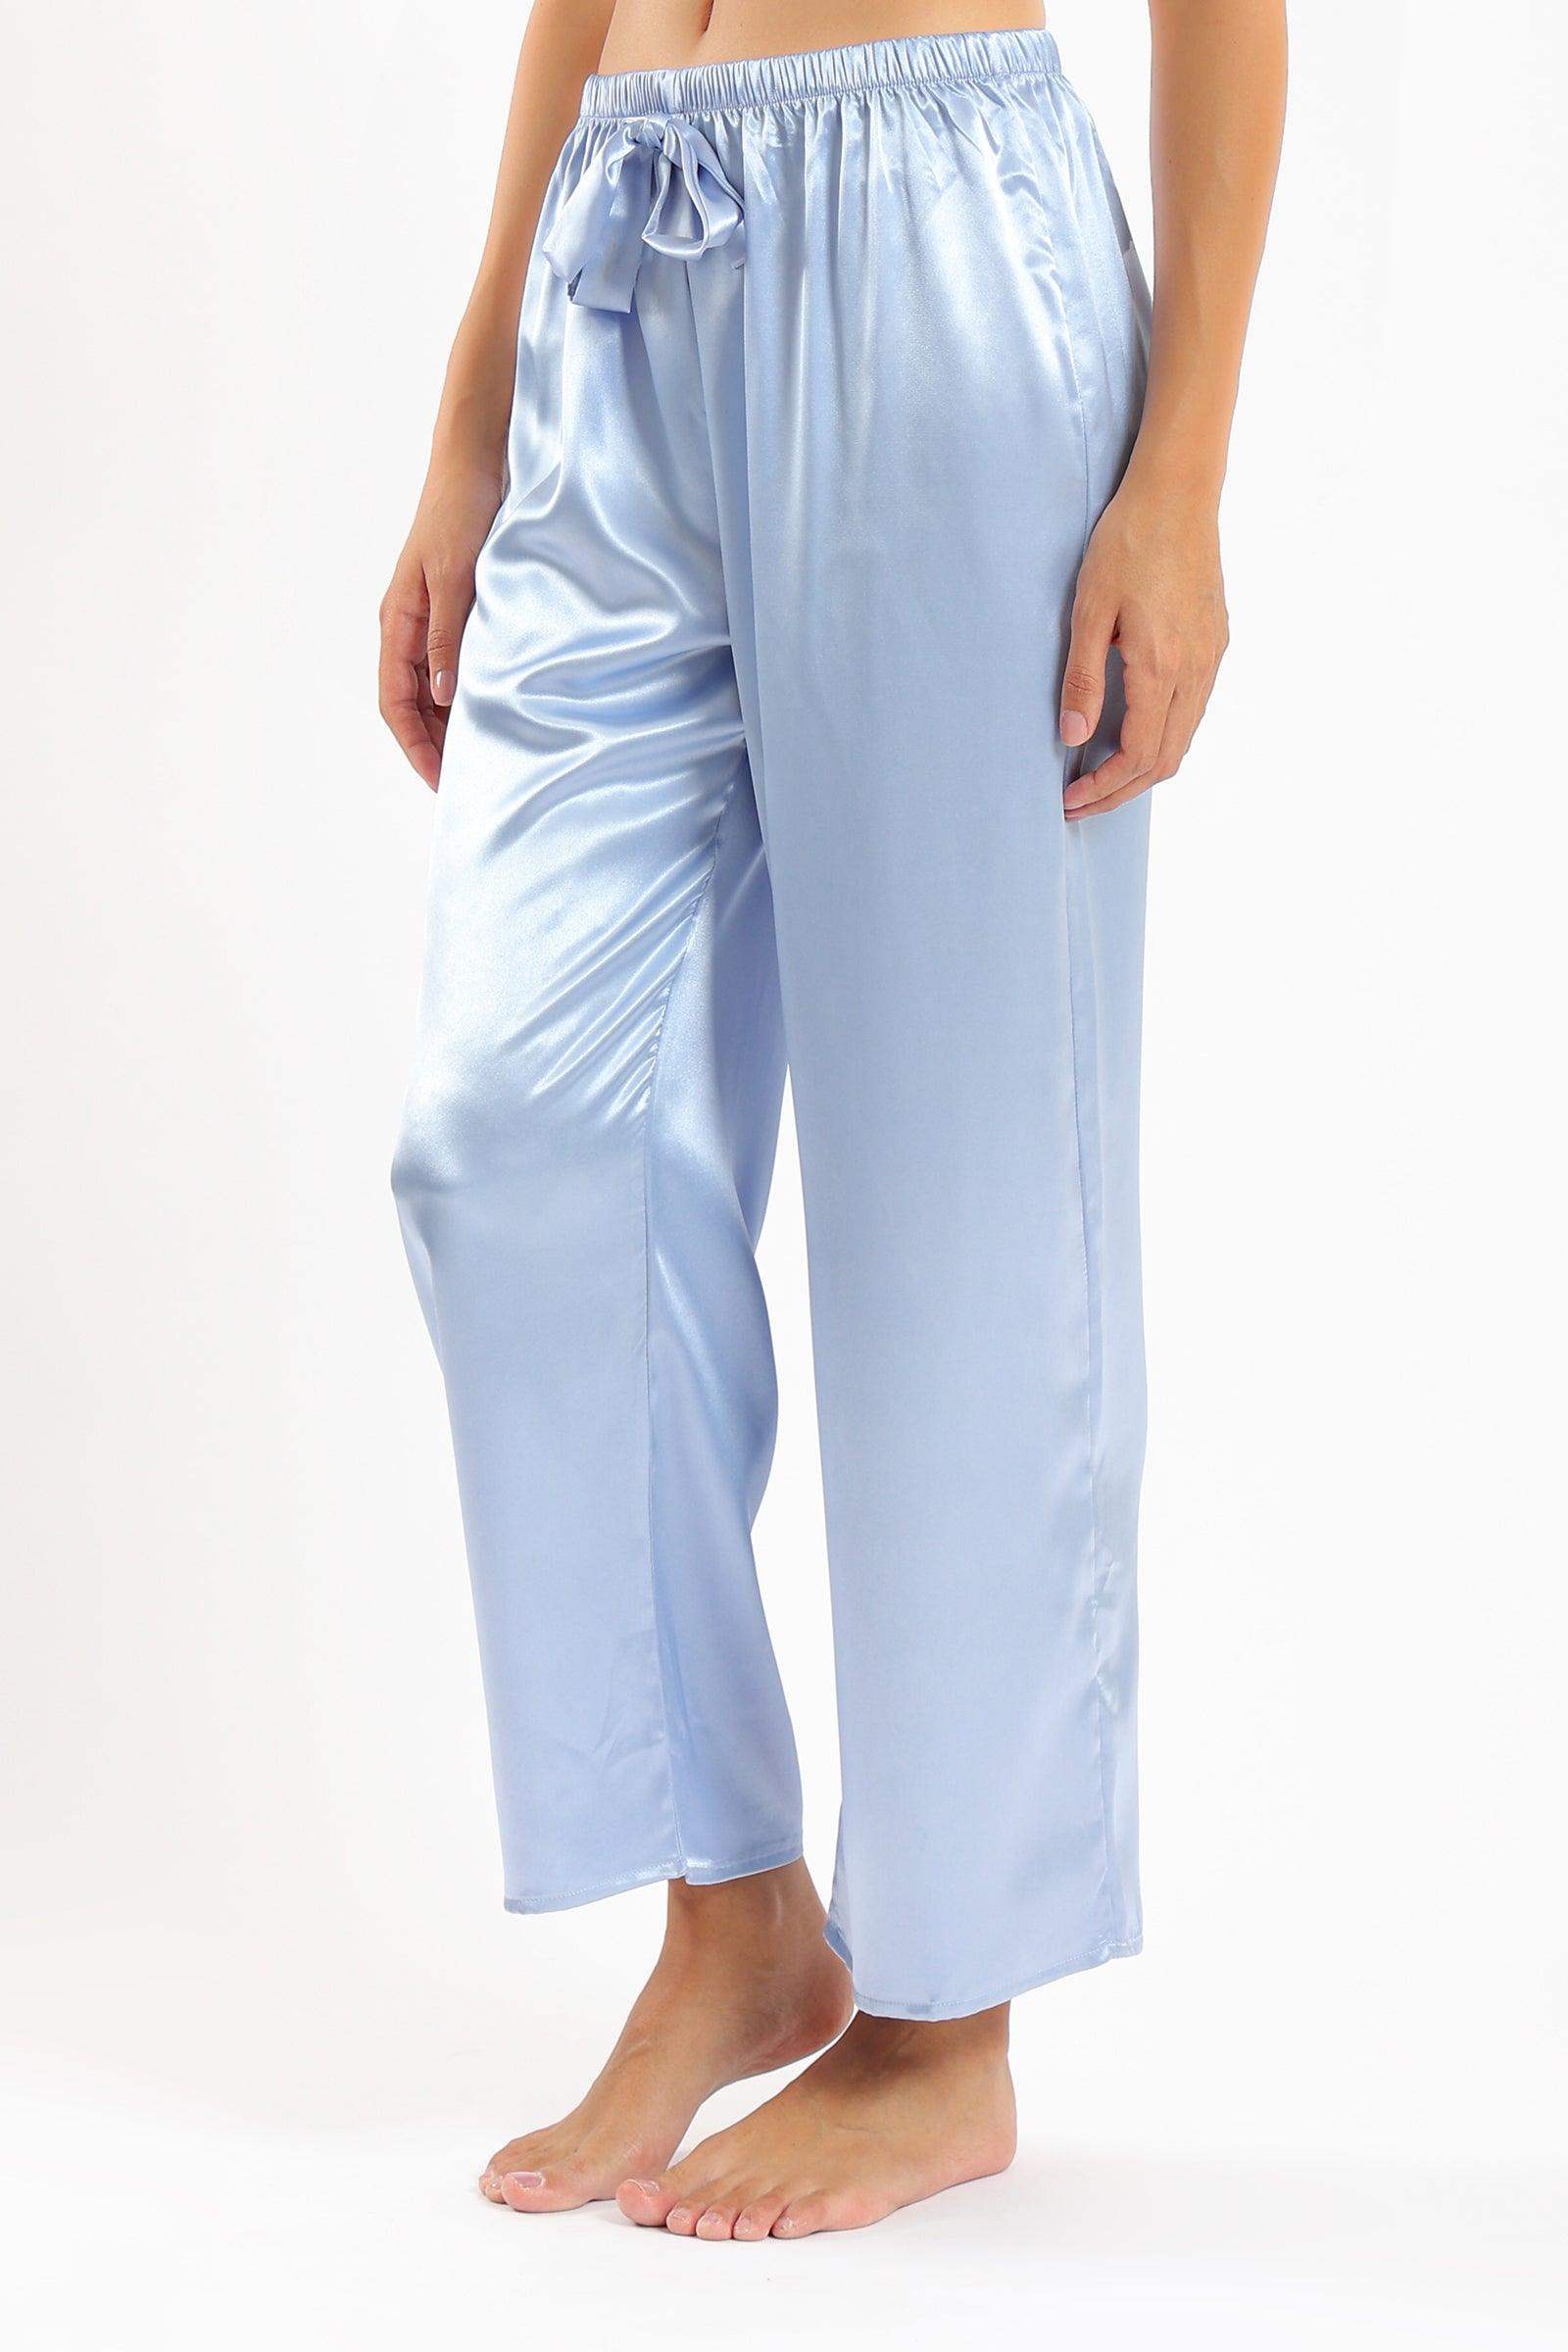 Satin Pyjama Pants - Carina - كارينا